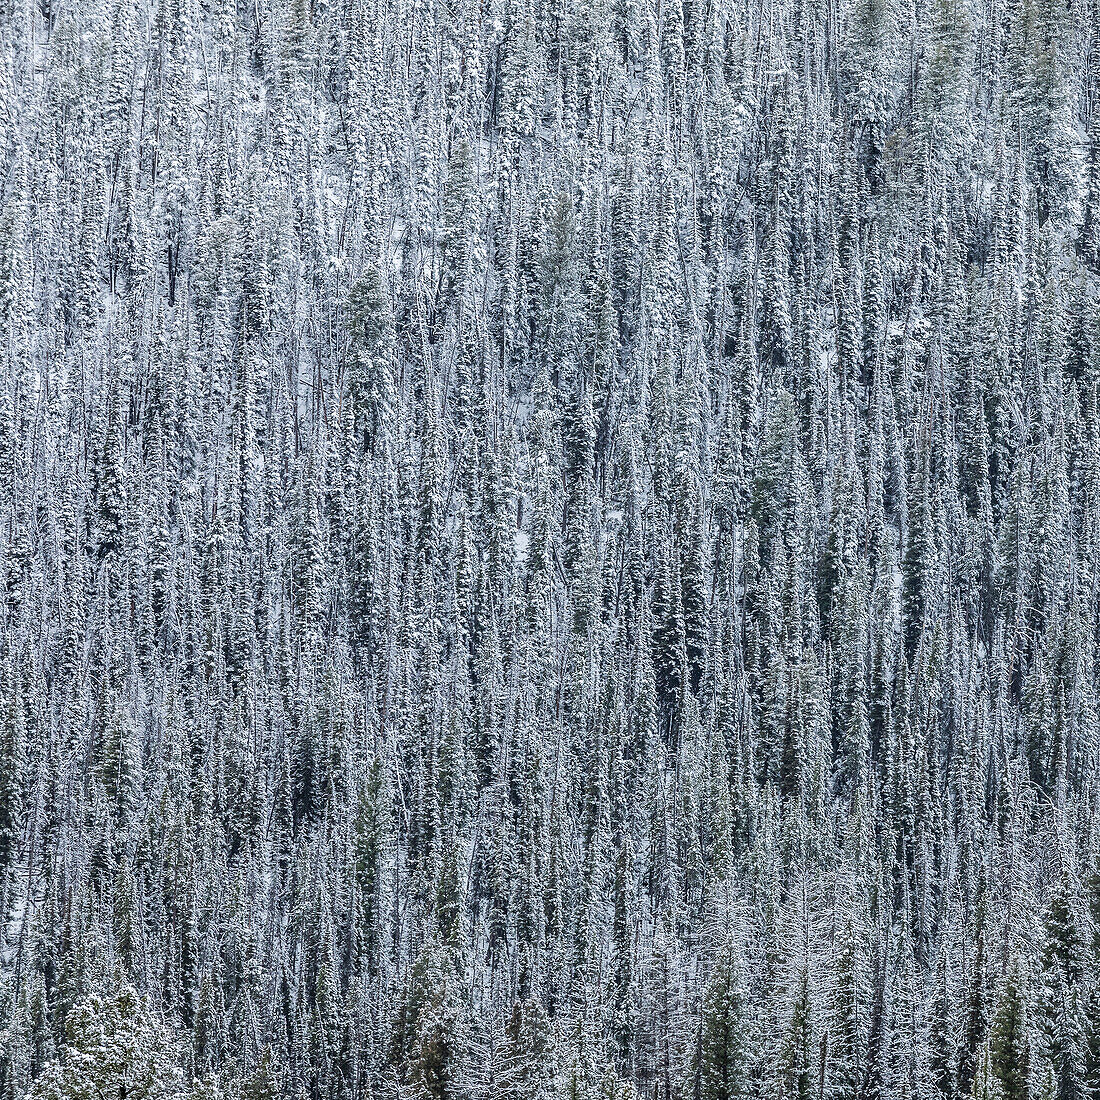 USA, Idaho, Stanley, erhöhte Ansicht des Pinienwaldes im Winter